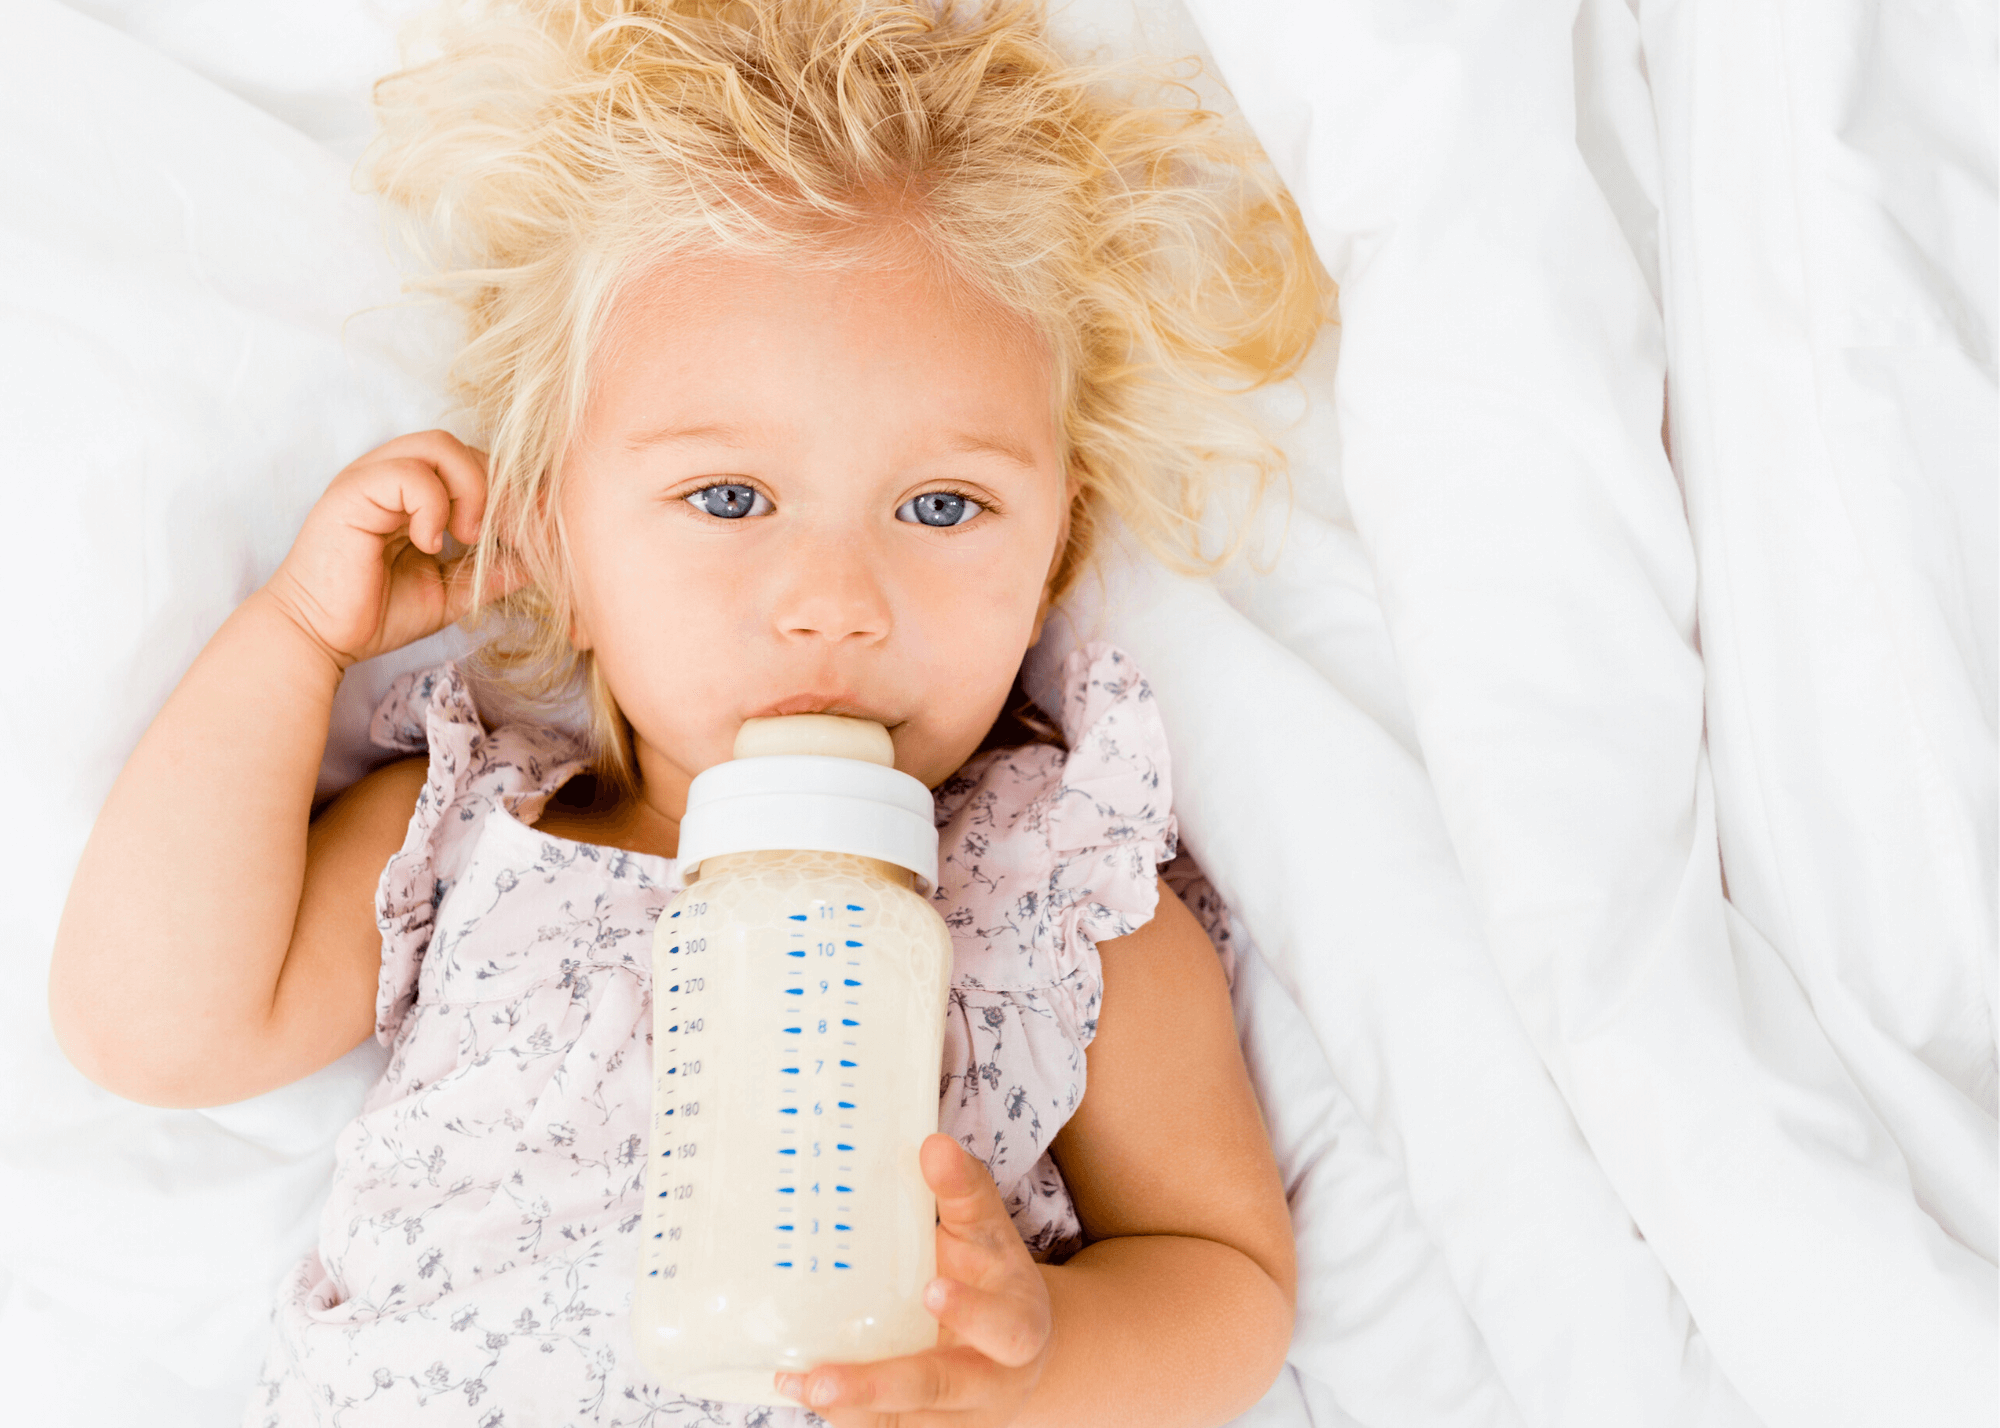 Cómo aprenden los bebés a beber de una botella de agua?